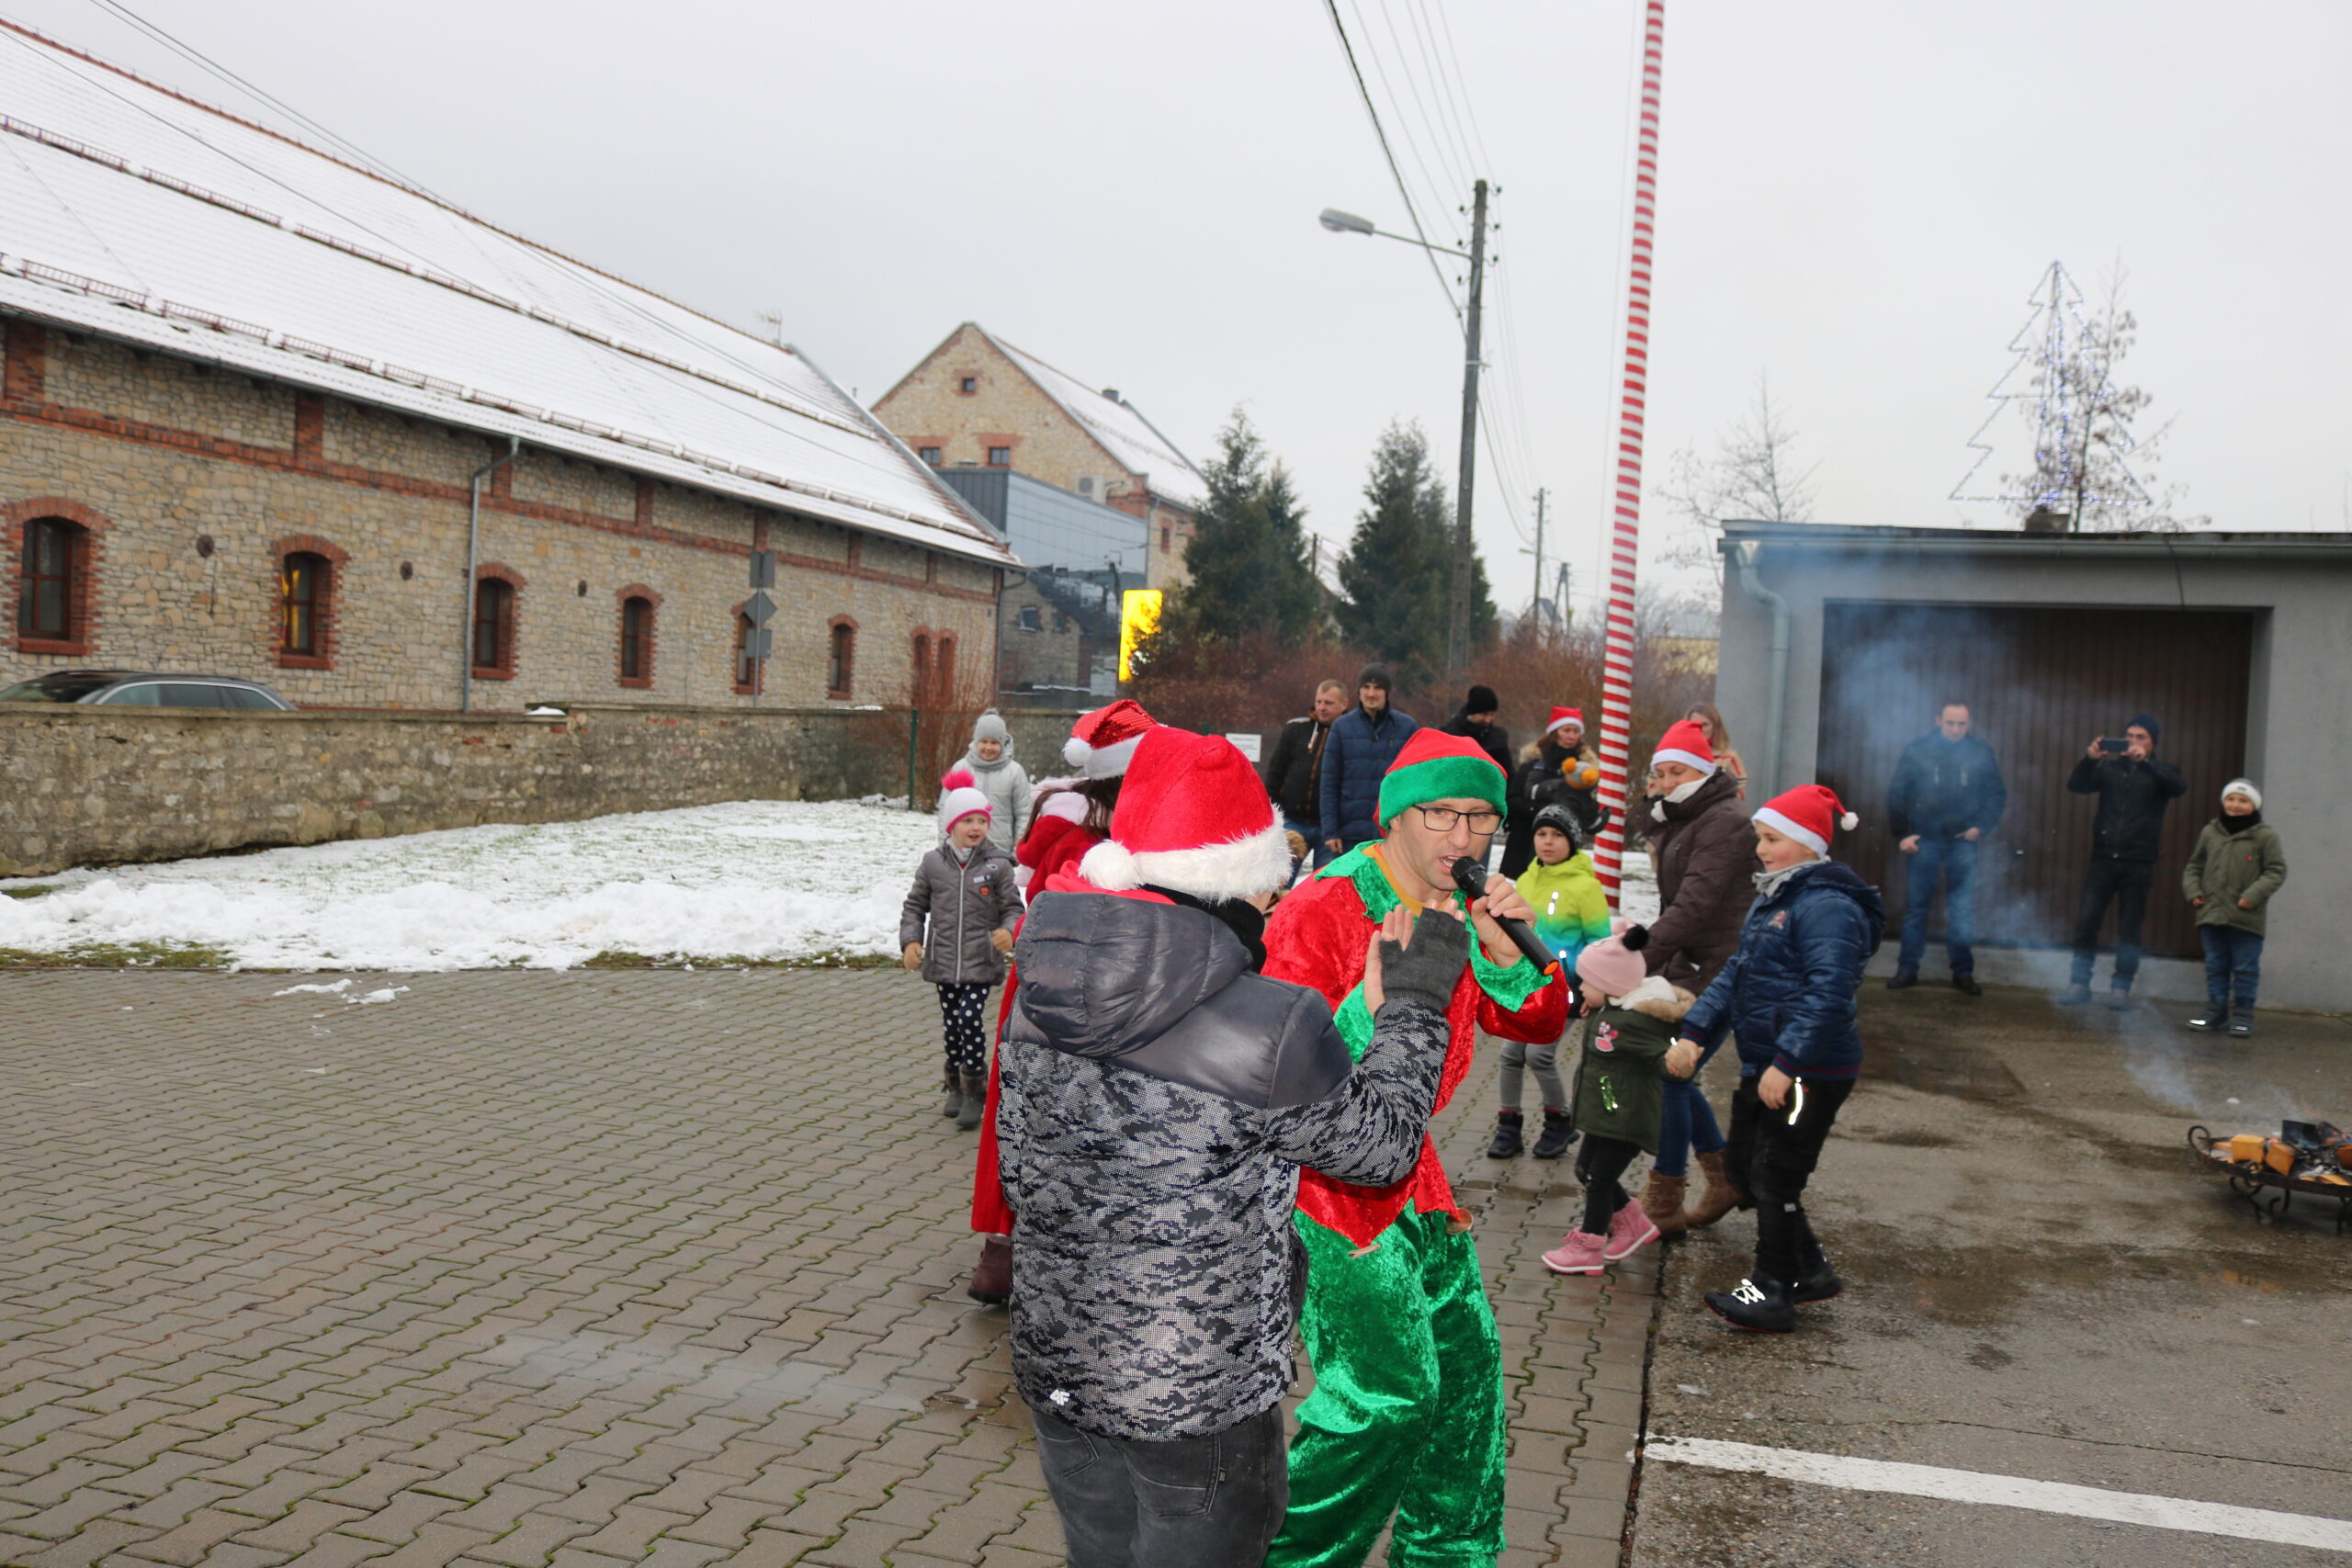 Spotkanie z Mikołajem w Olszowej